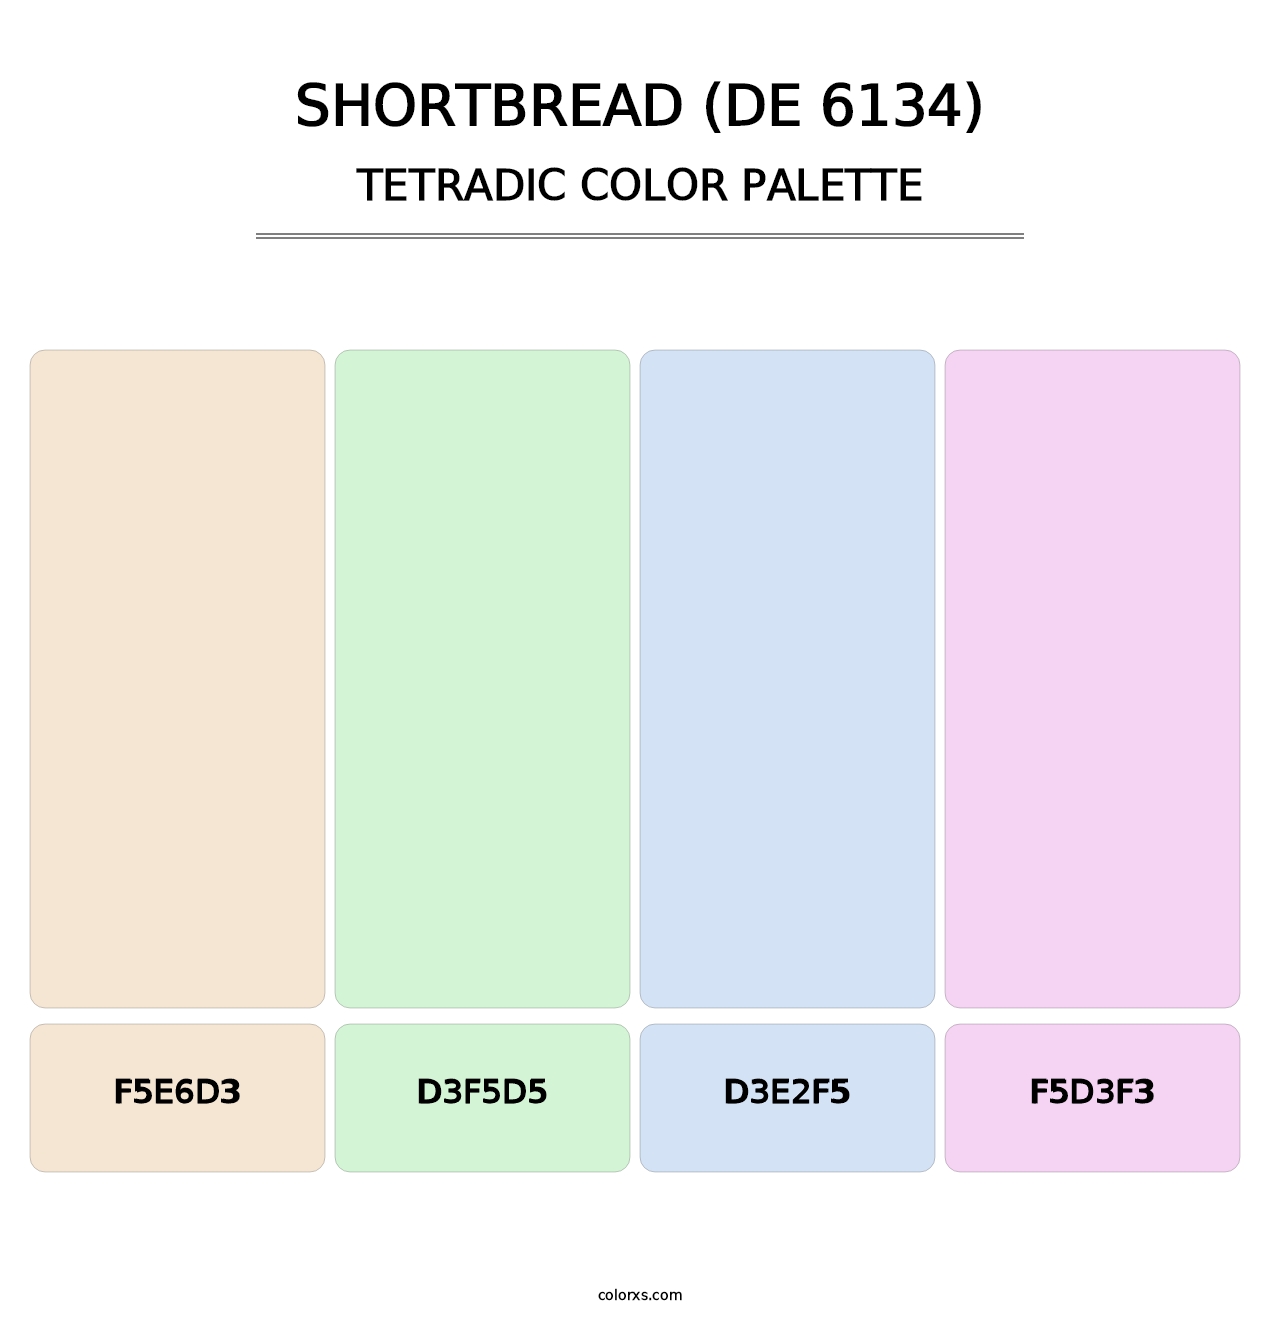 Shortbread (DE 6134) - Tetradic Color Palette